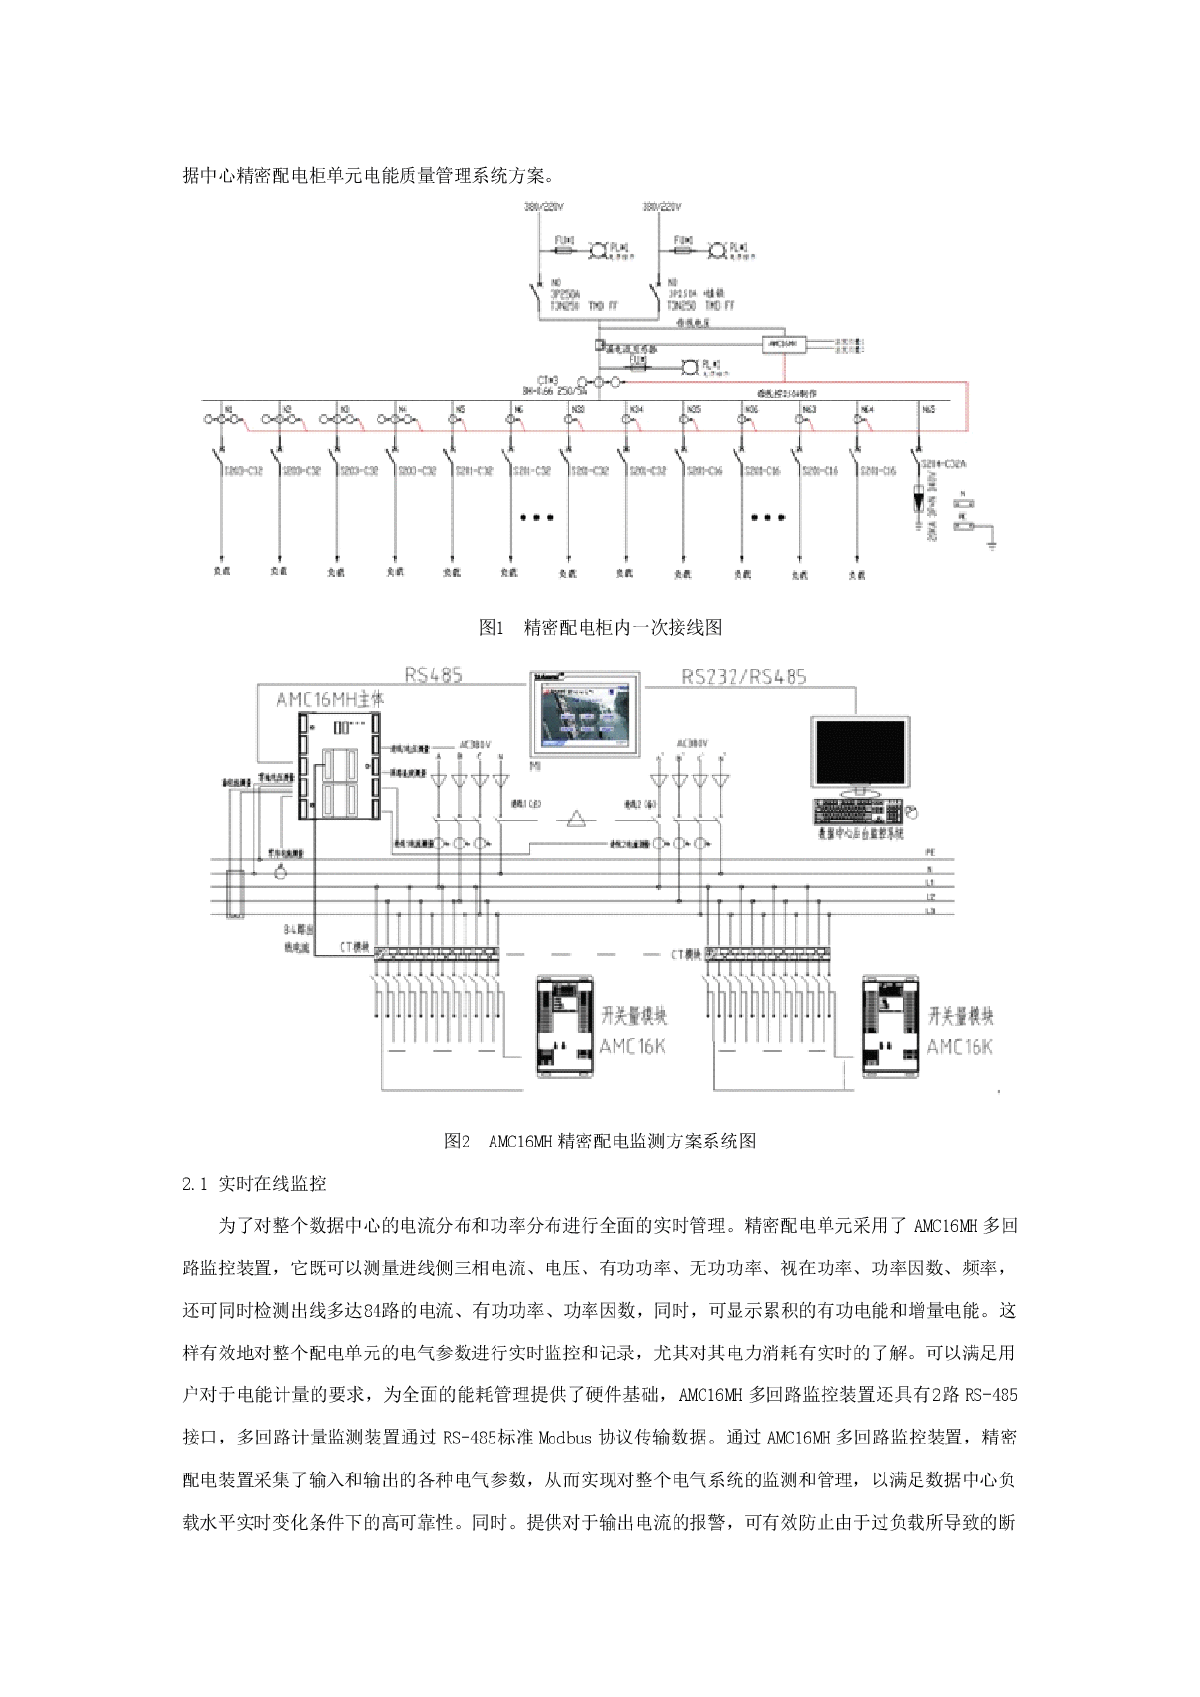 20150507数据中心机房电气系统设计与监控产品选型-图二